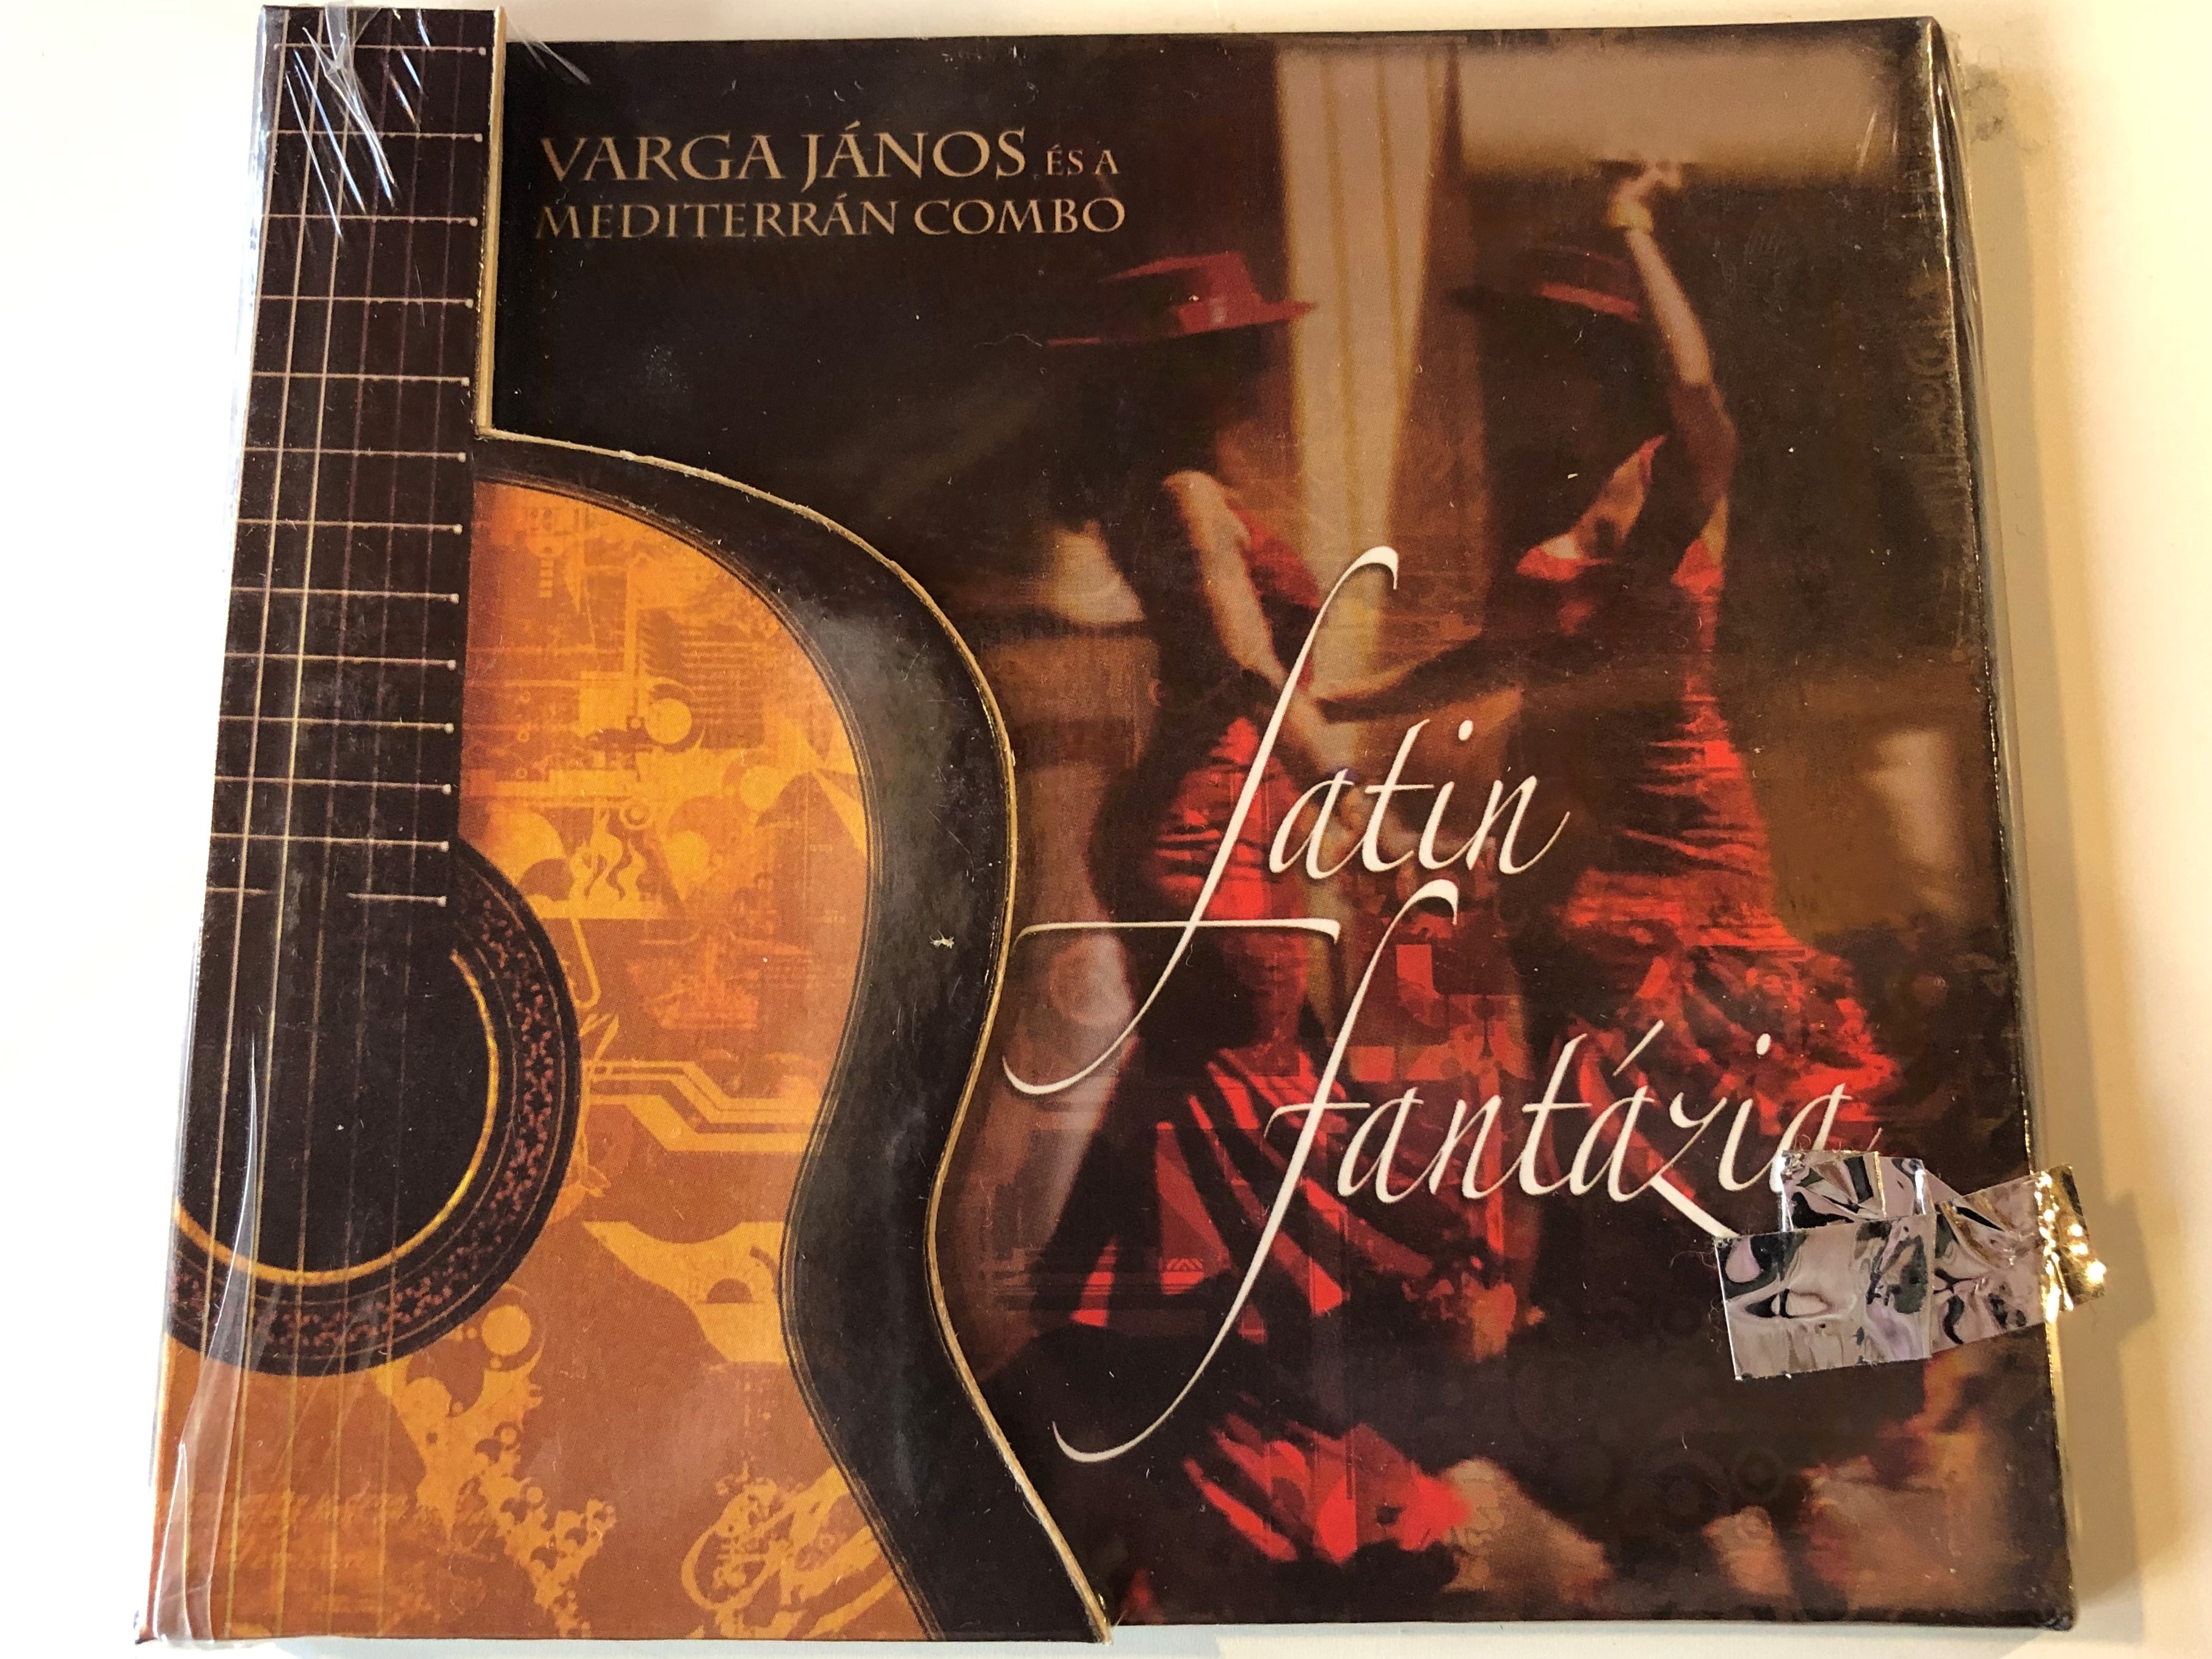 varga-j-nos-es-a-mediterran-combo-latin-fantazia-audio-cd-5998272707329-1-.jpg